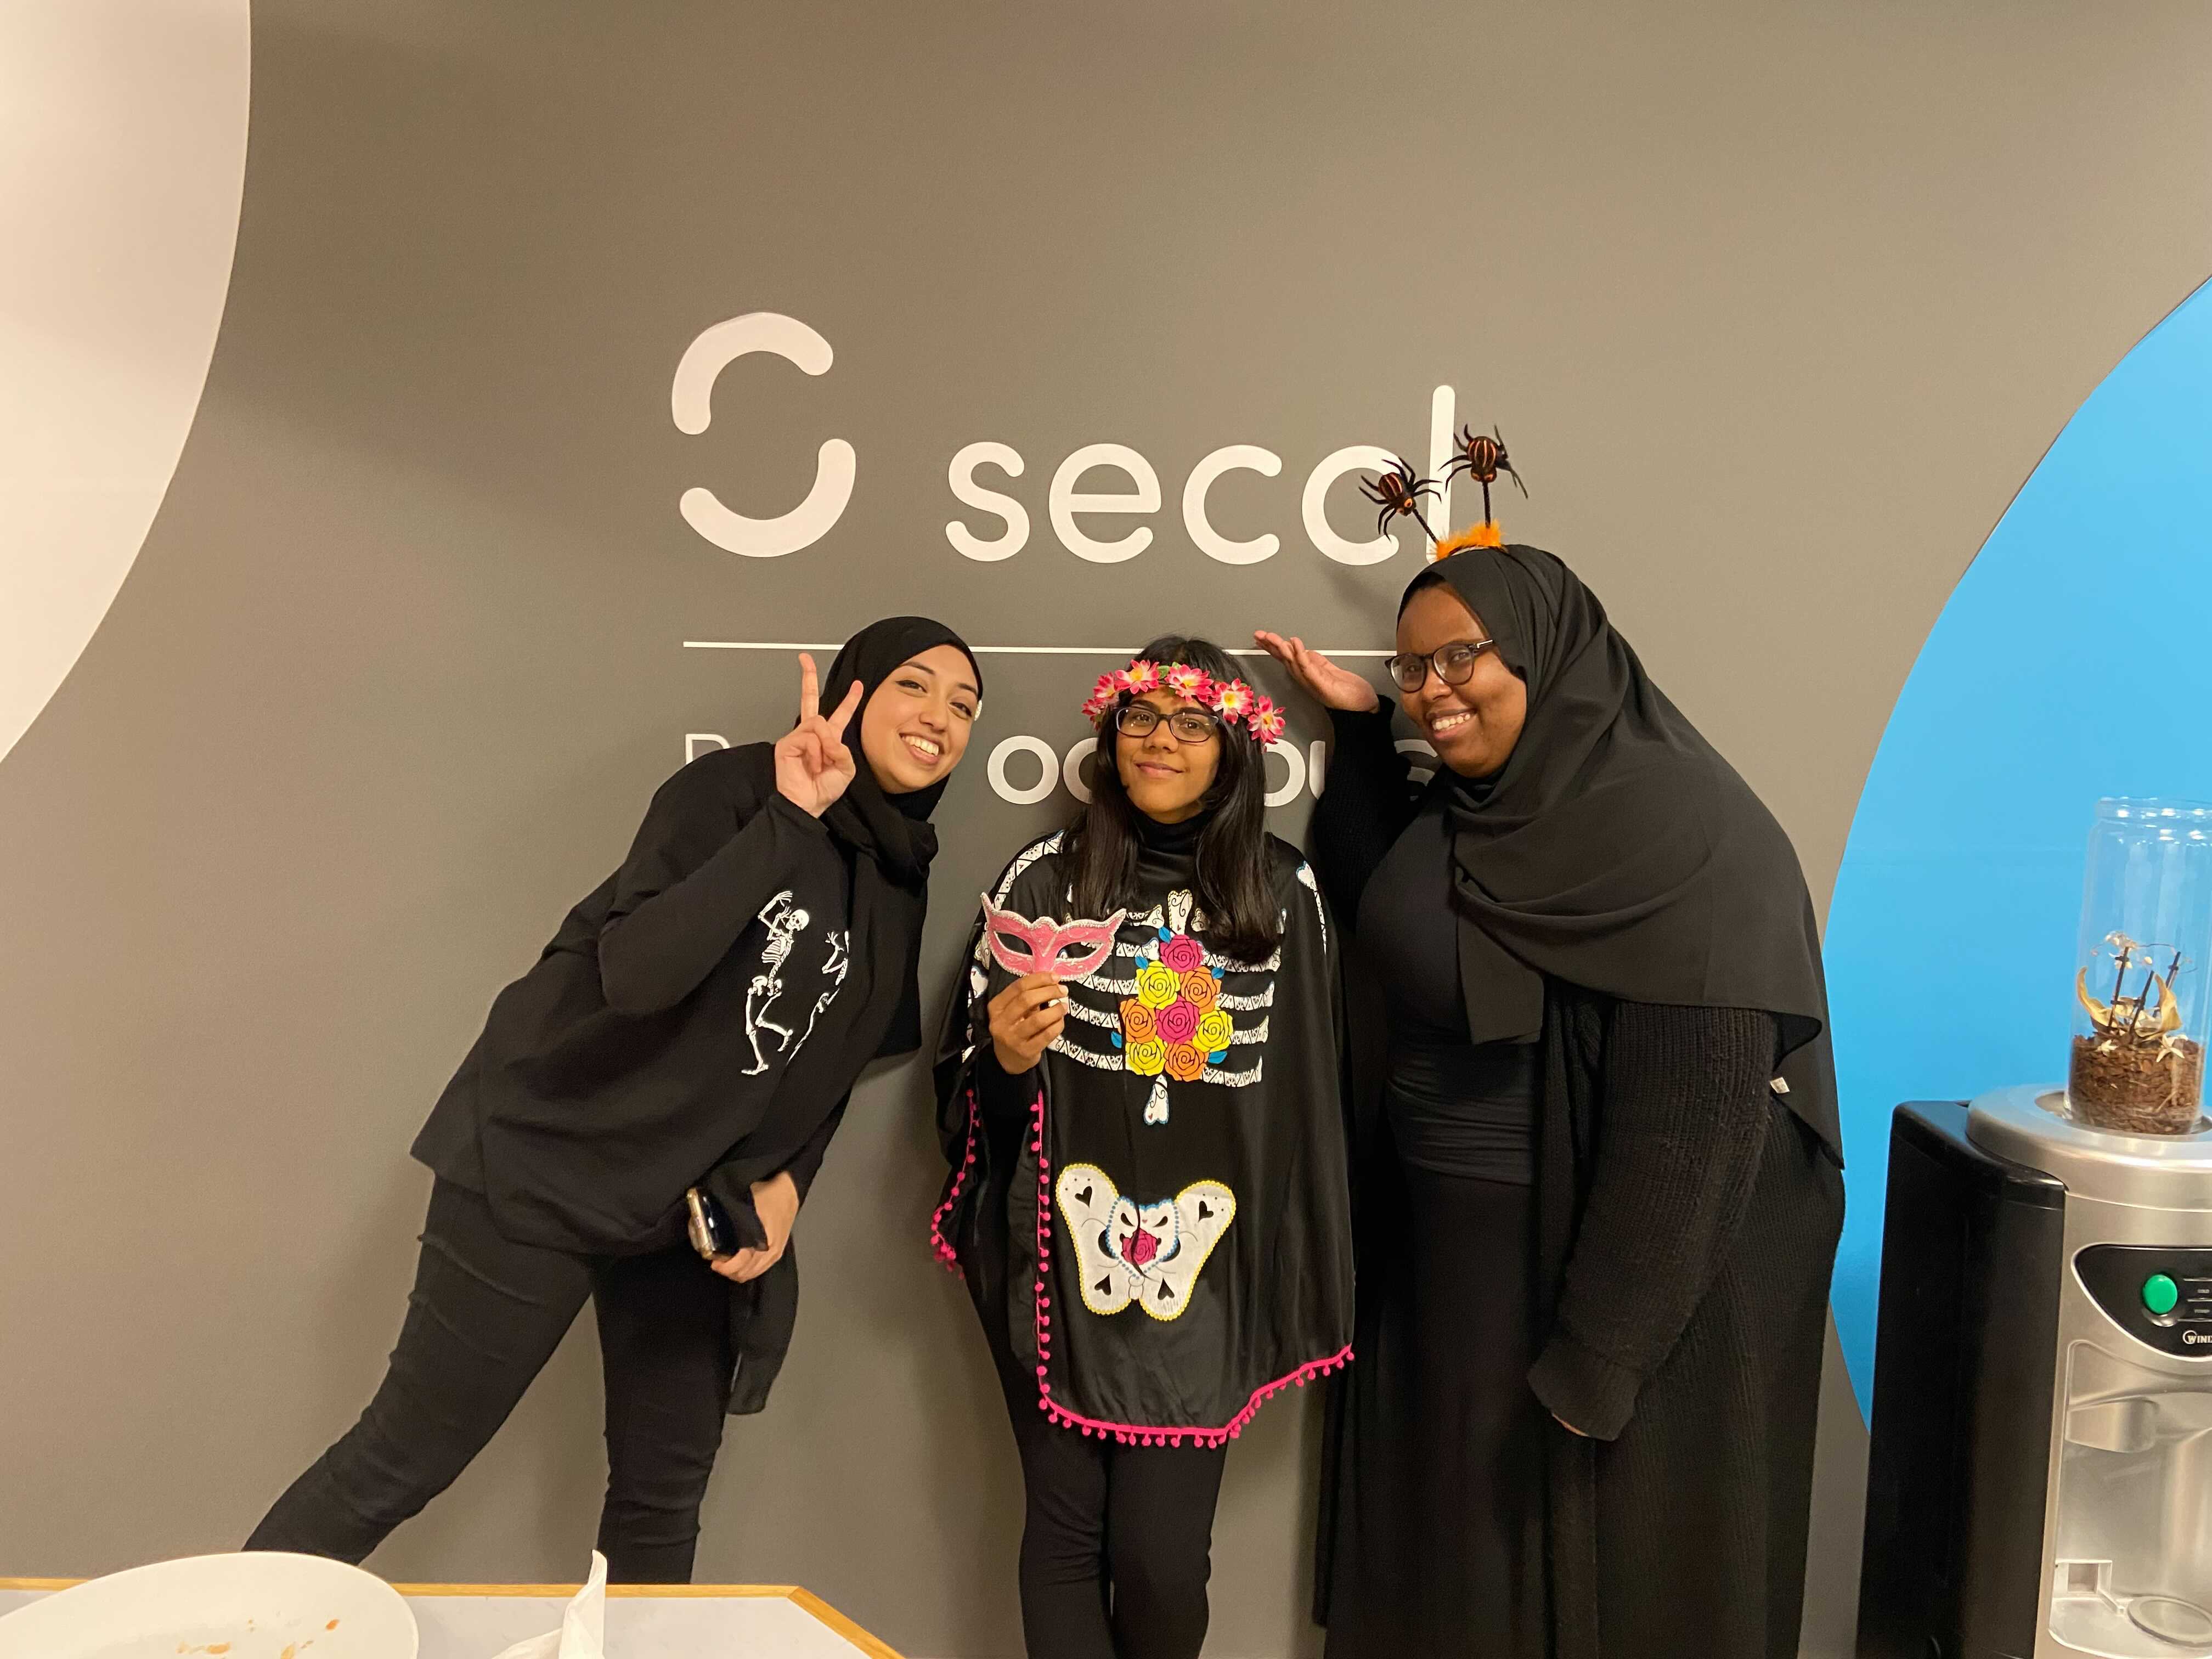 Seccl employees in Halloween fancy dress